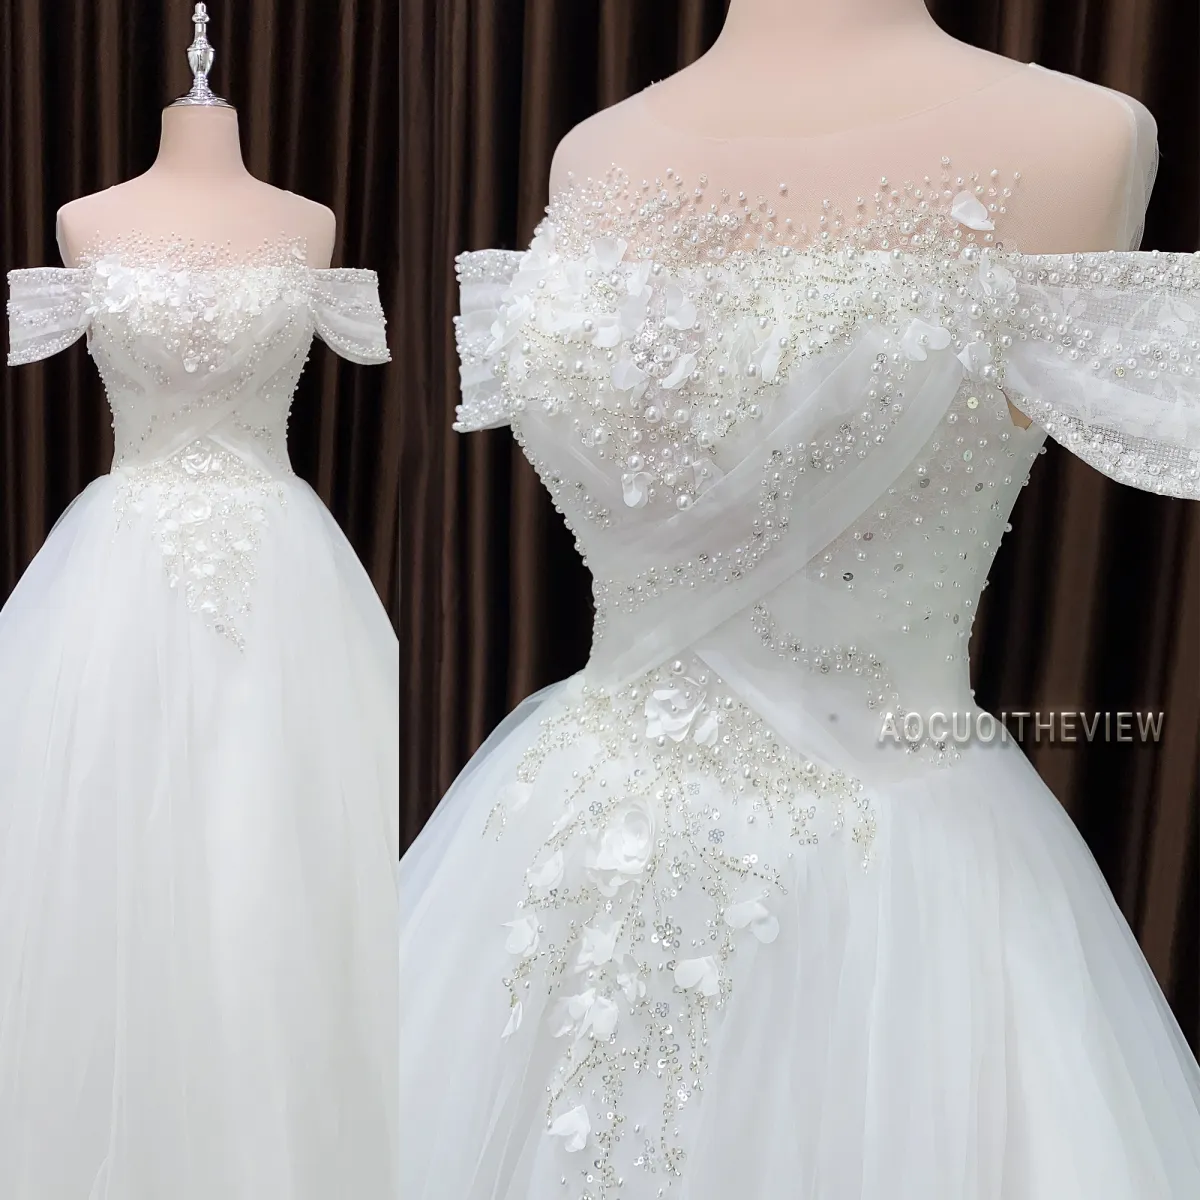 22 mẫu váy cưới bầu biến cô dâu thành công chúa trong ngày cưới 